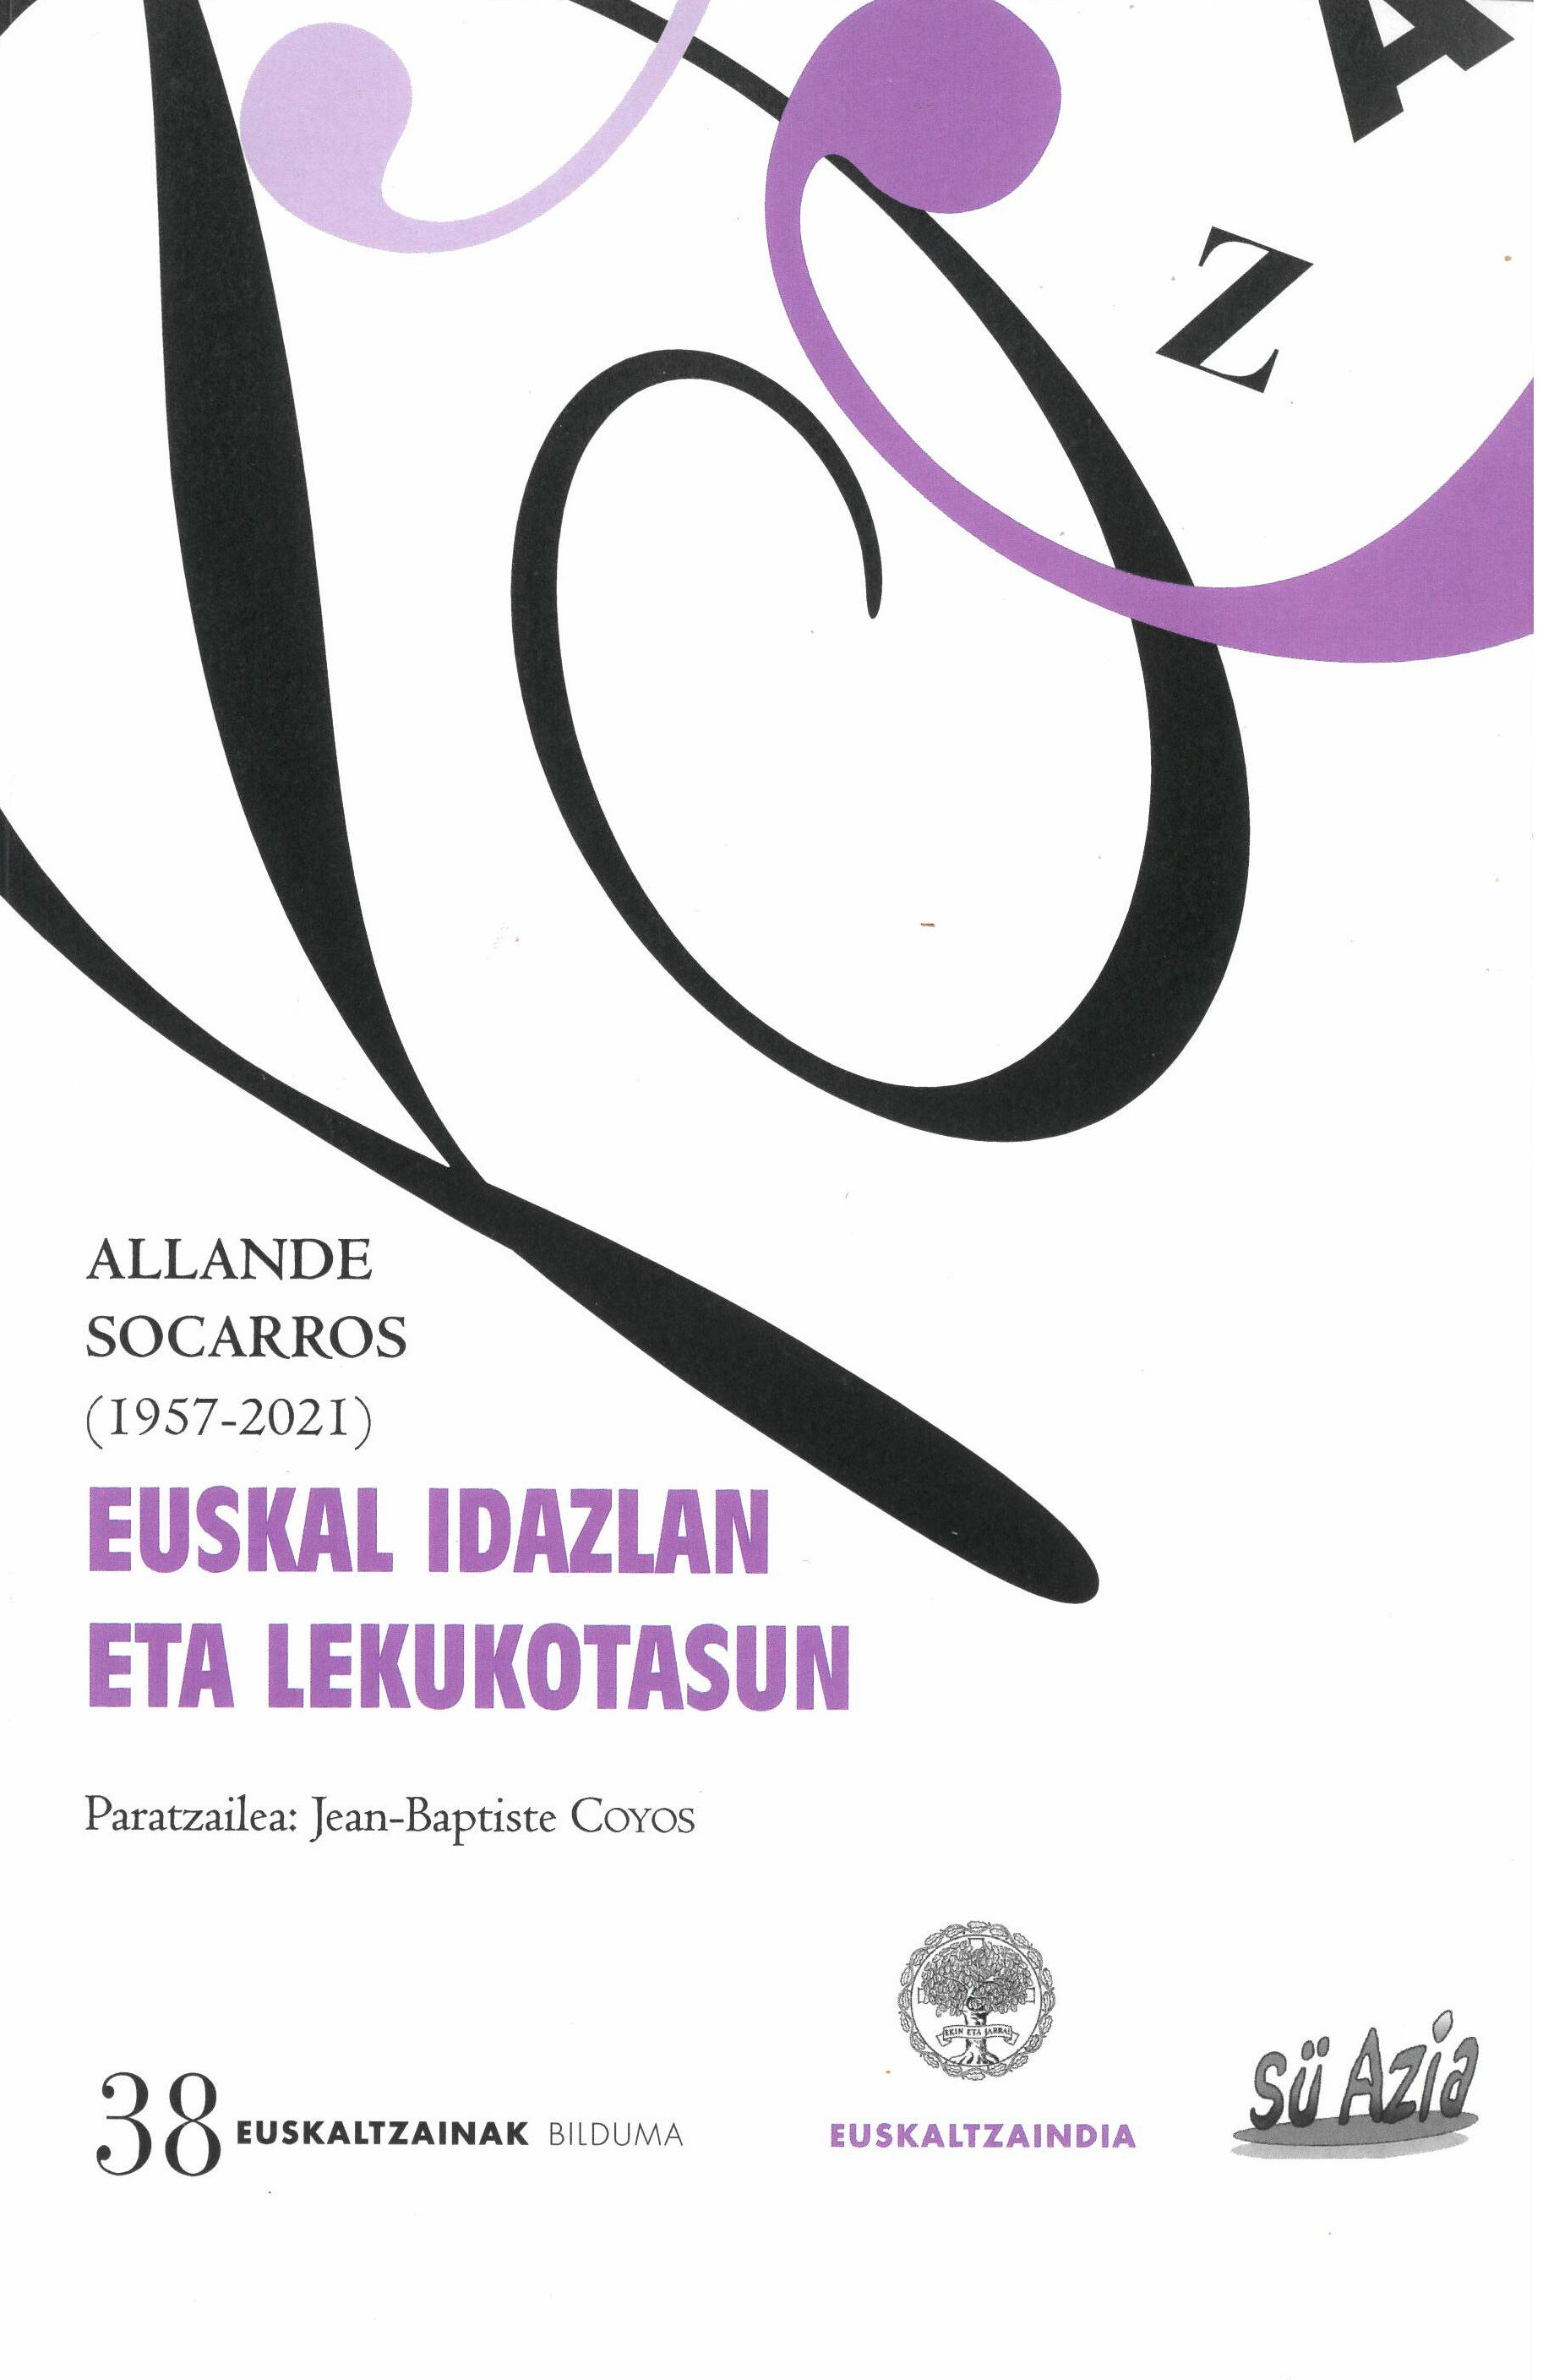 Allande Socarros (1957-2021) Euskal idazlan eta lekukotasun